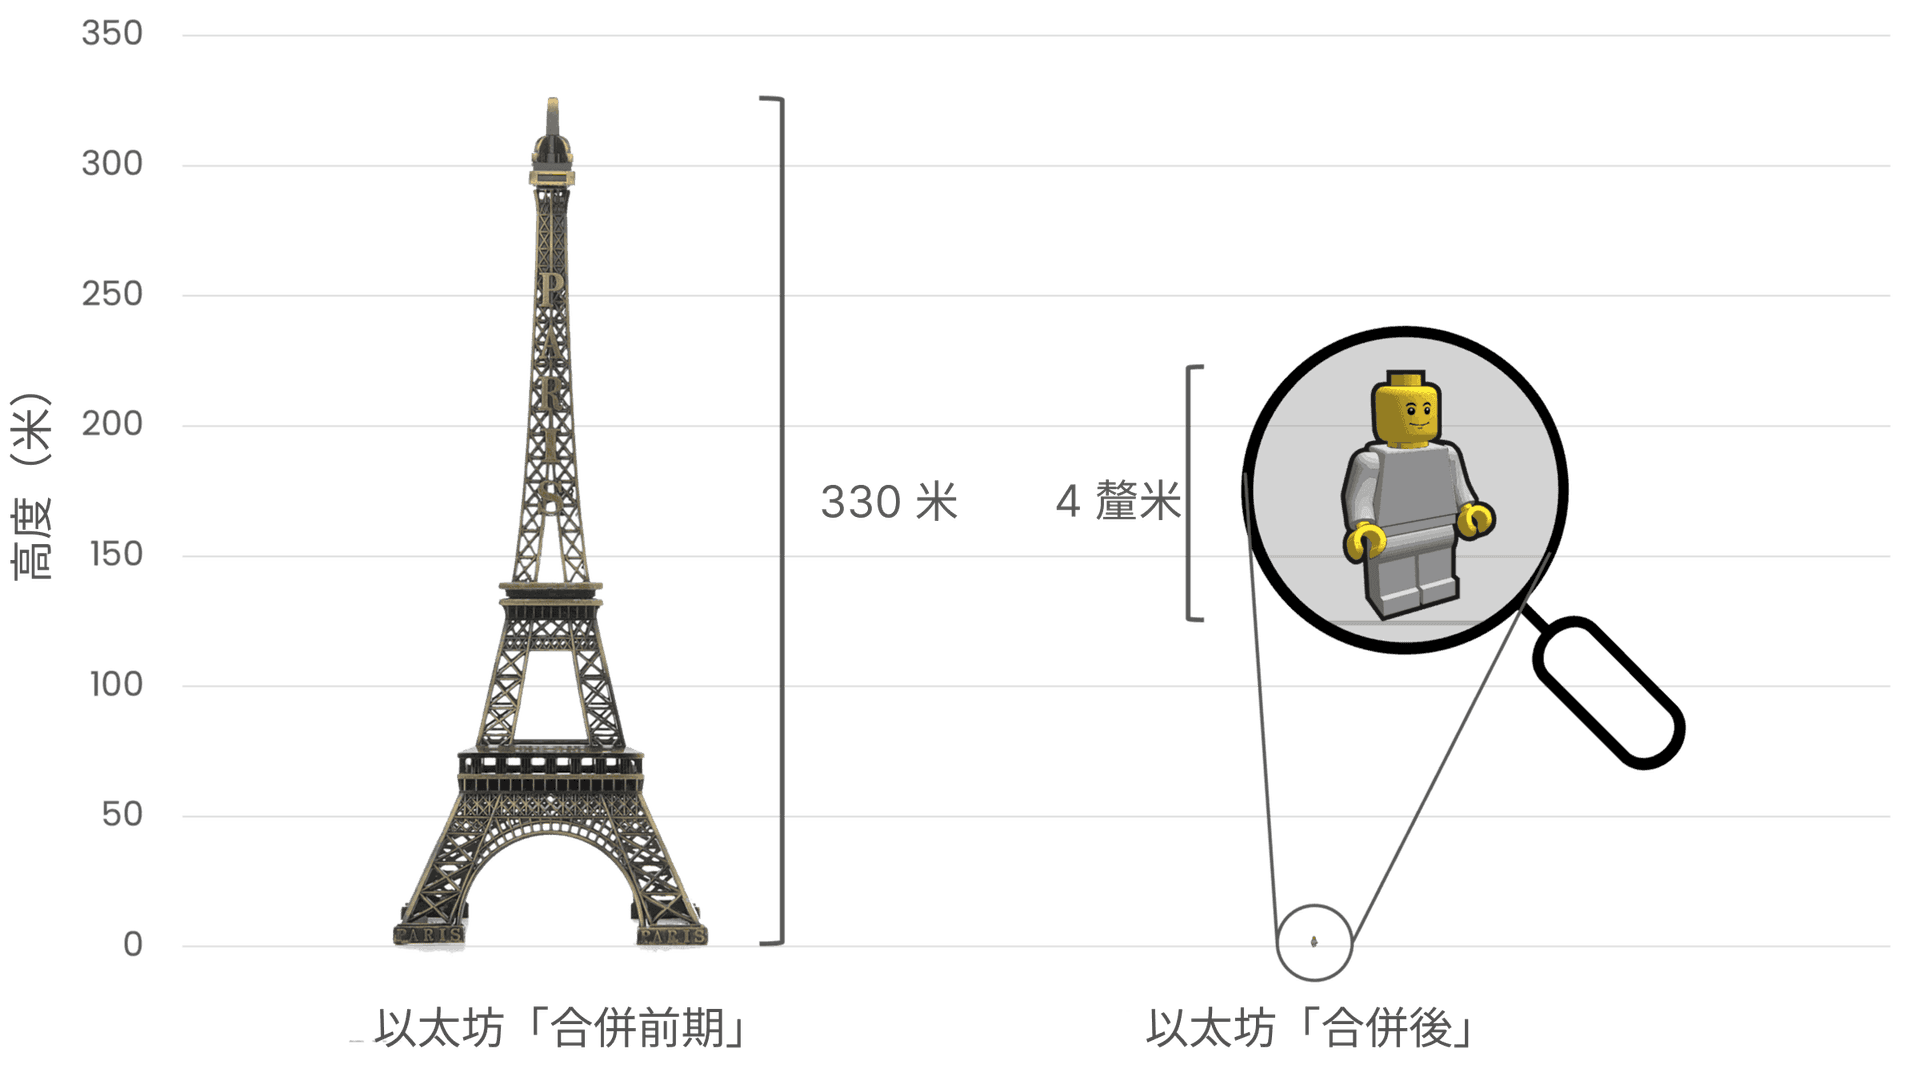 比較以太坊合併前後的能源消耗，以左方的艾菲爾鐵塔（高度 330 公尺）象徵合併前的高能耗，以及右方 4 公分高的樂高小玩偶，象徵合併後大幅降低的能源消耗